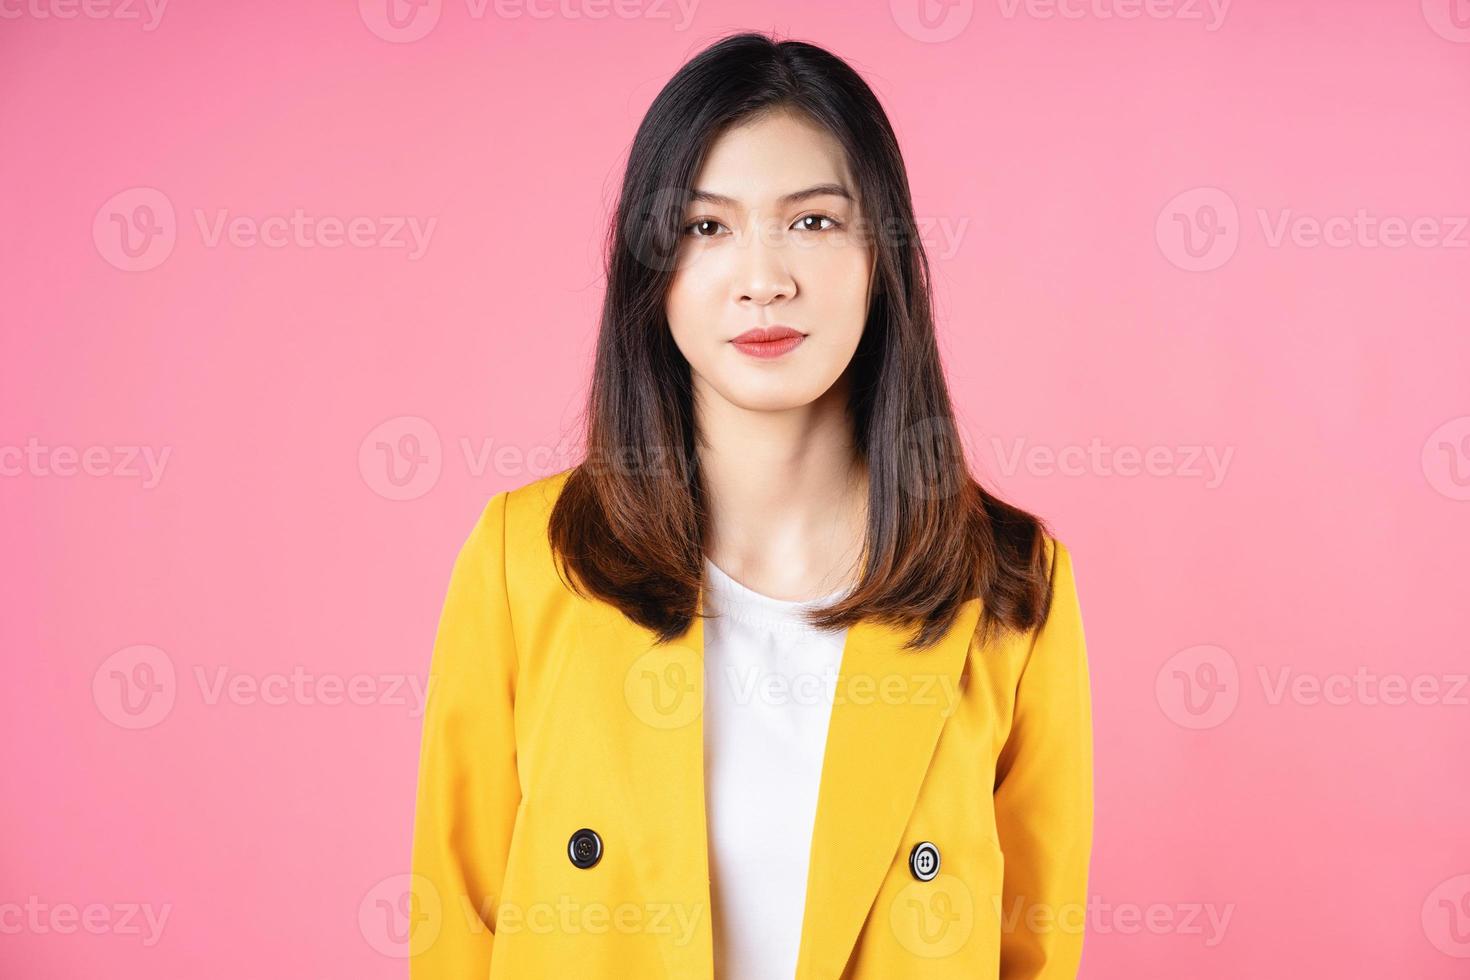 portret van jonge Aziatische zakenvrouw foto